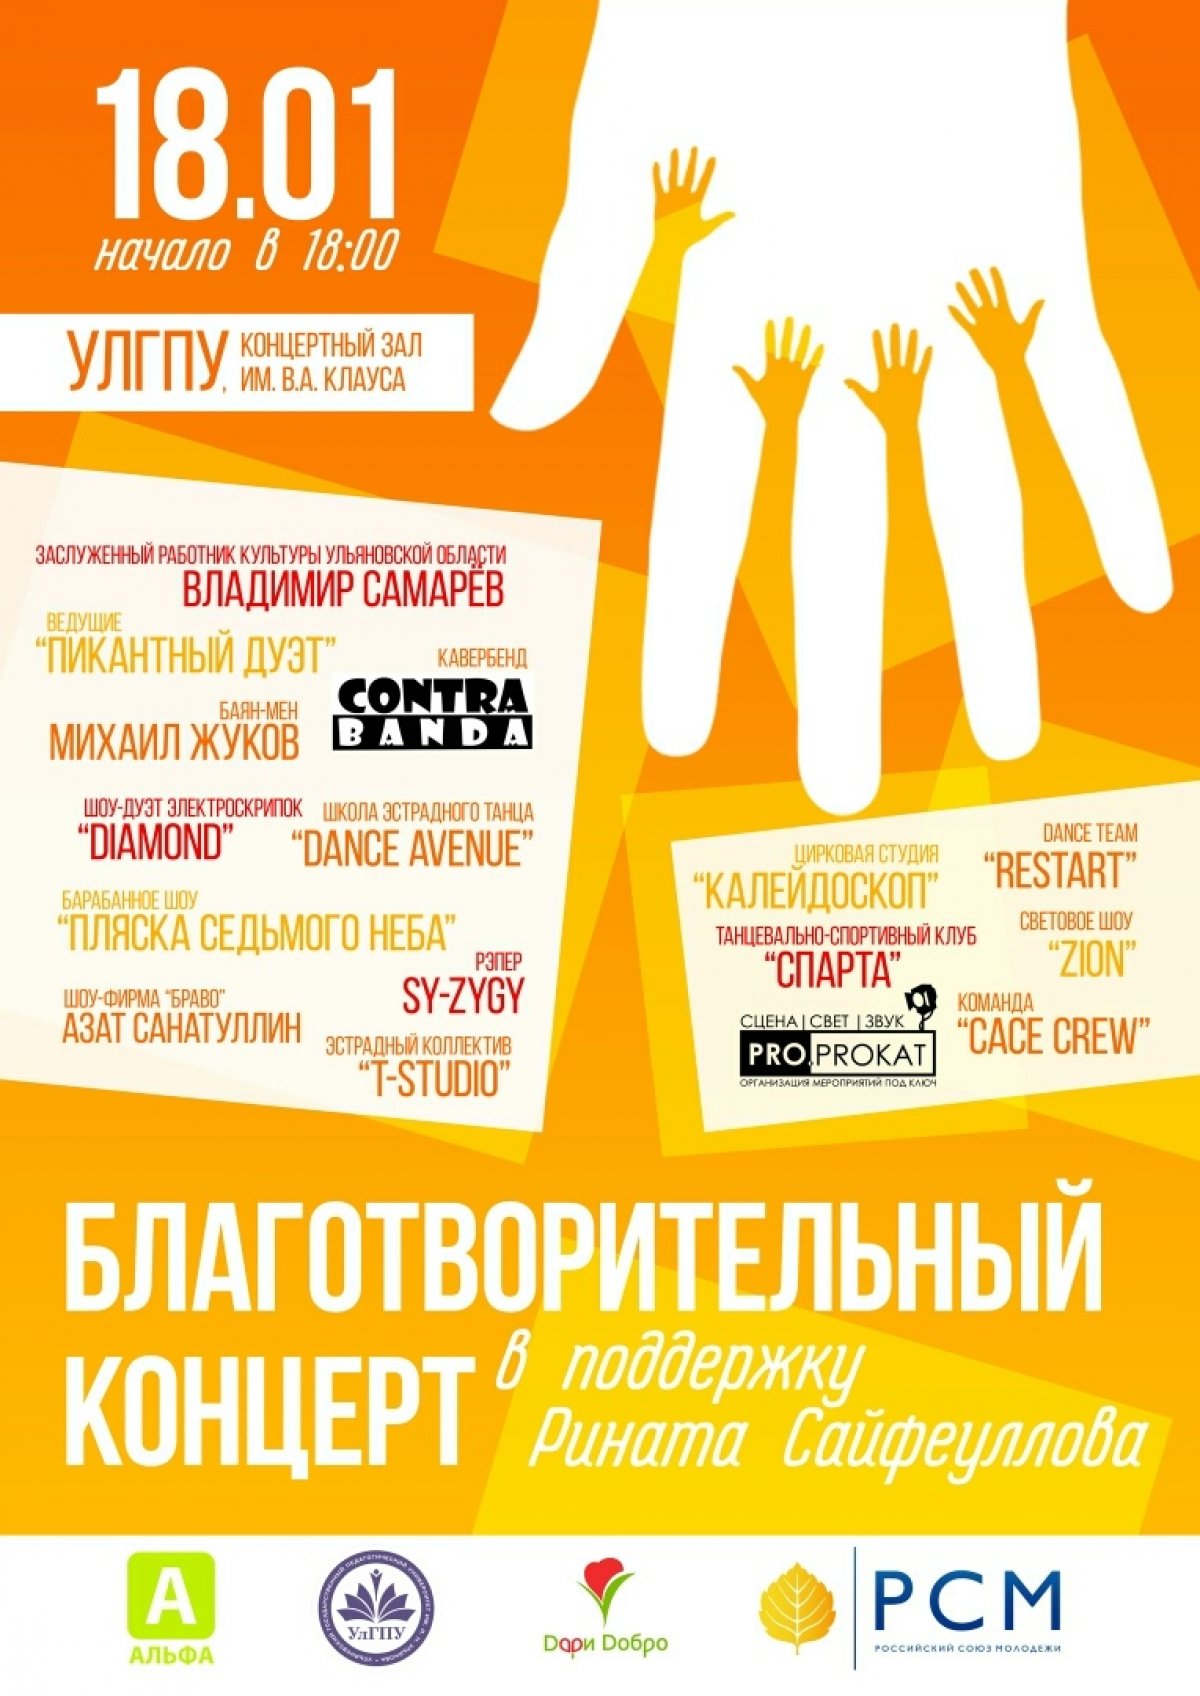 Добрый день дорогие друзья🙏 студенты Ульяновского профтеха совместно с РСМ и Альфой 18 января